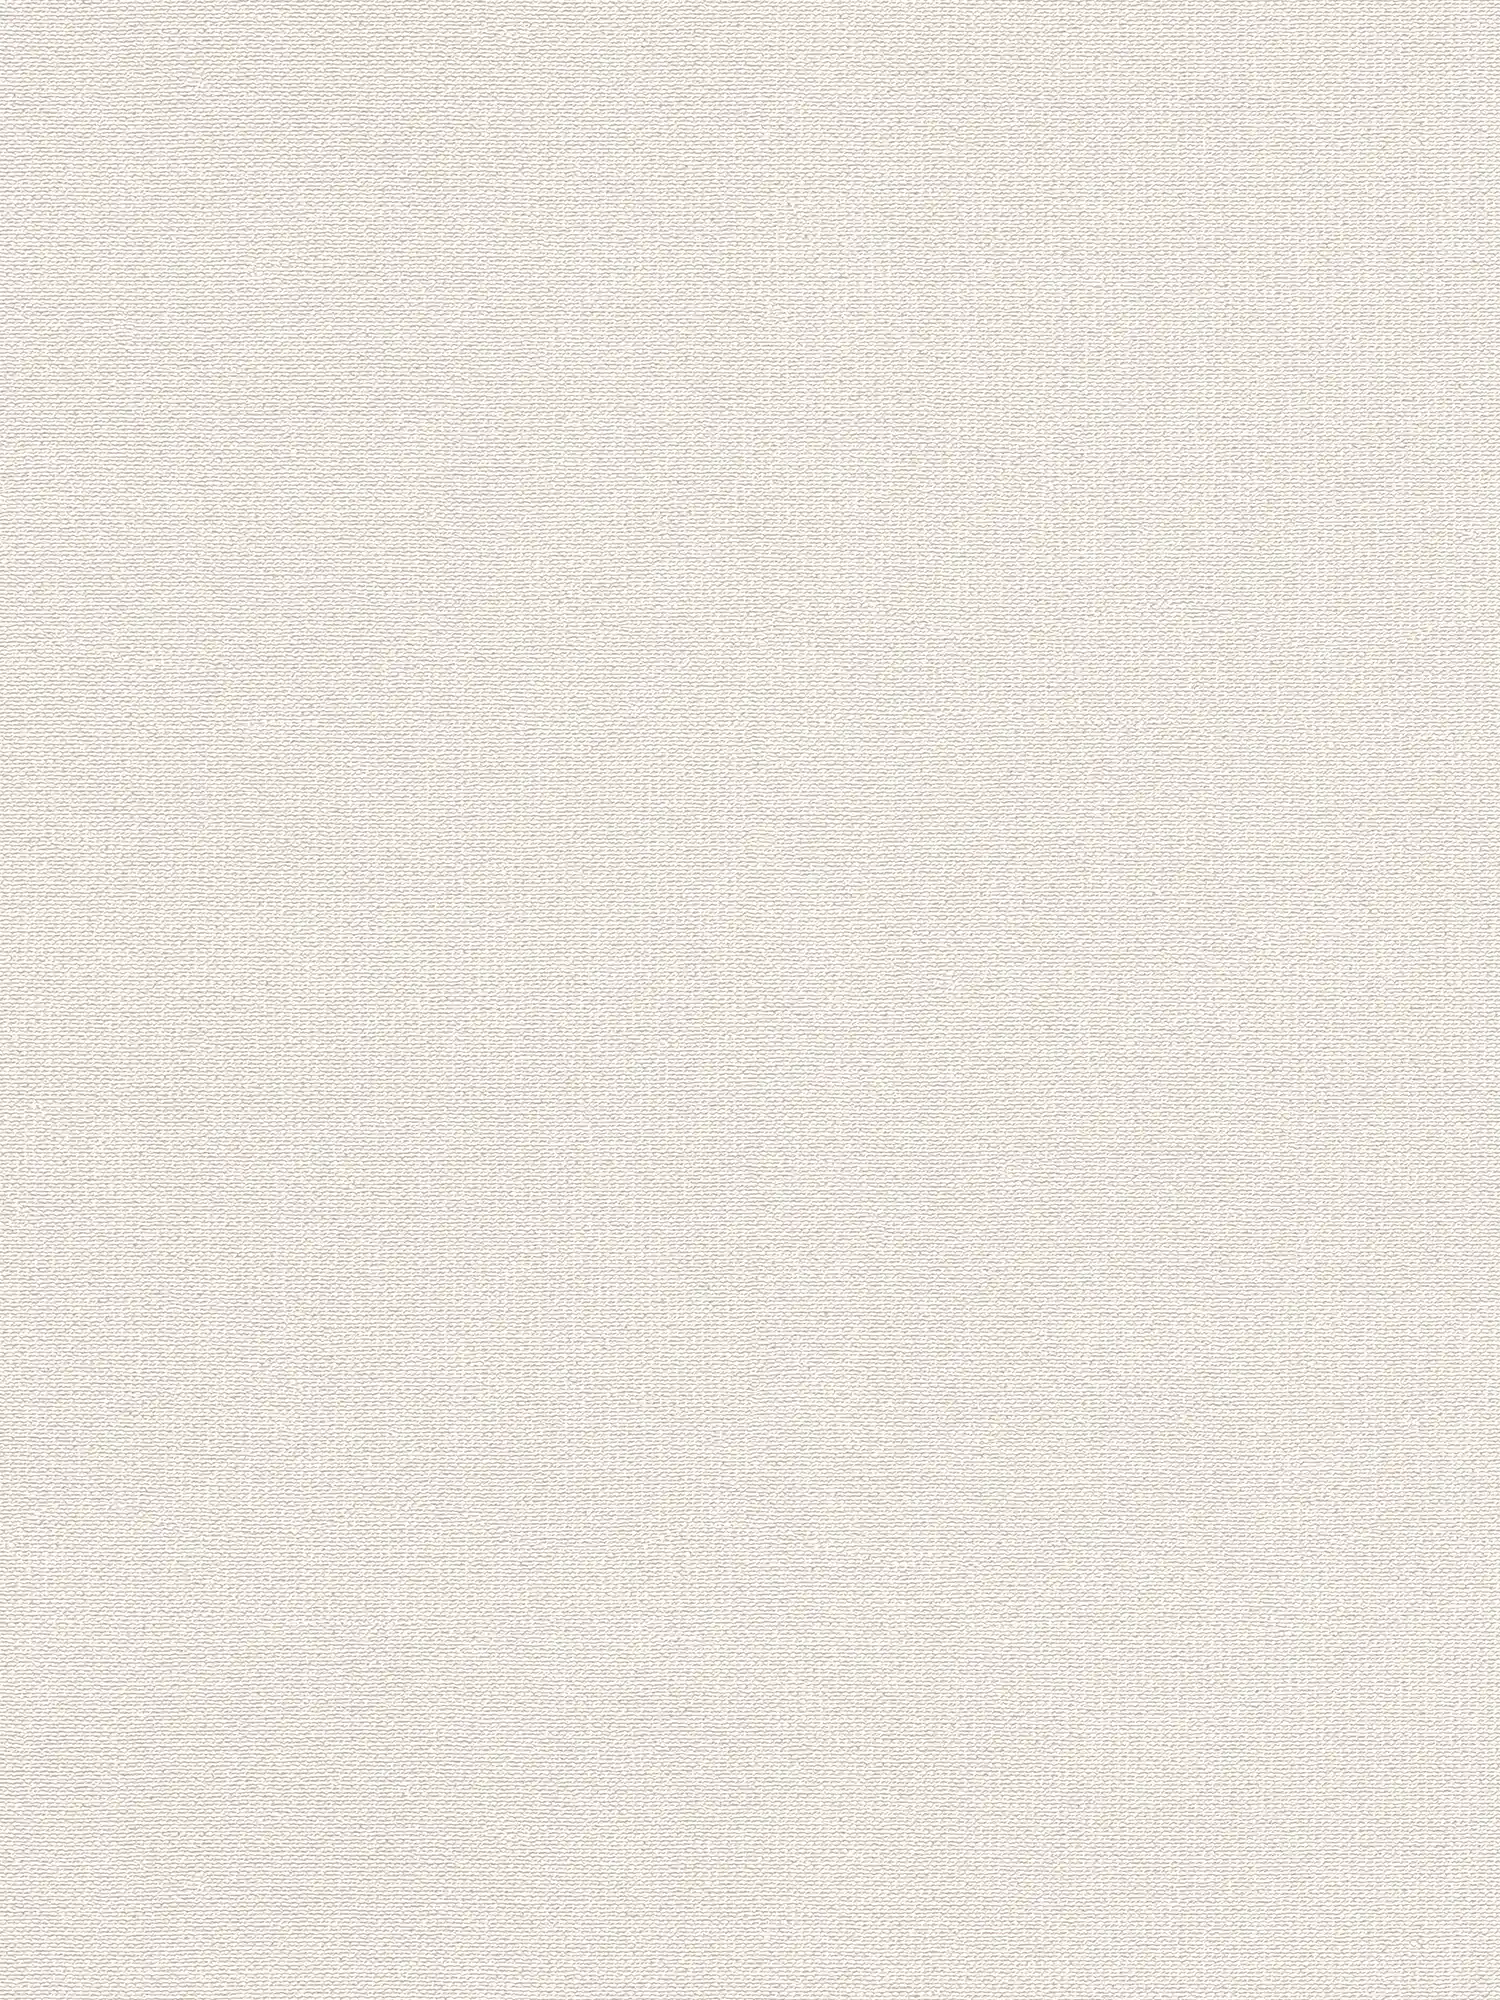 Papier peint intissé mat à structure aspect lin - blanc, crème
